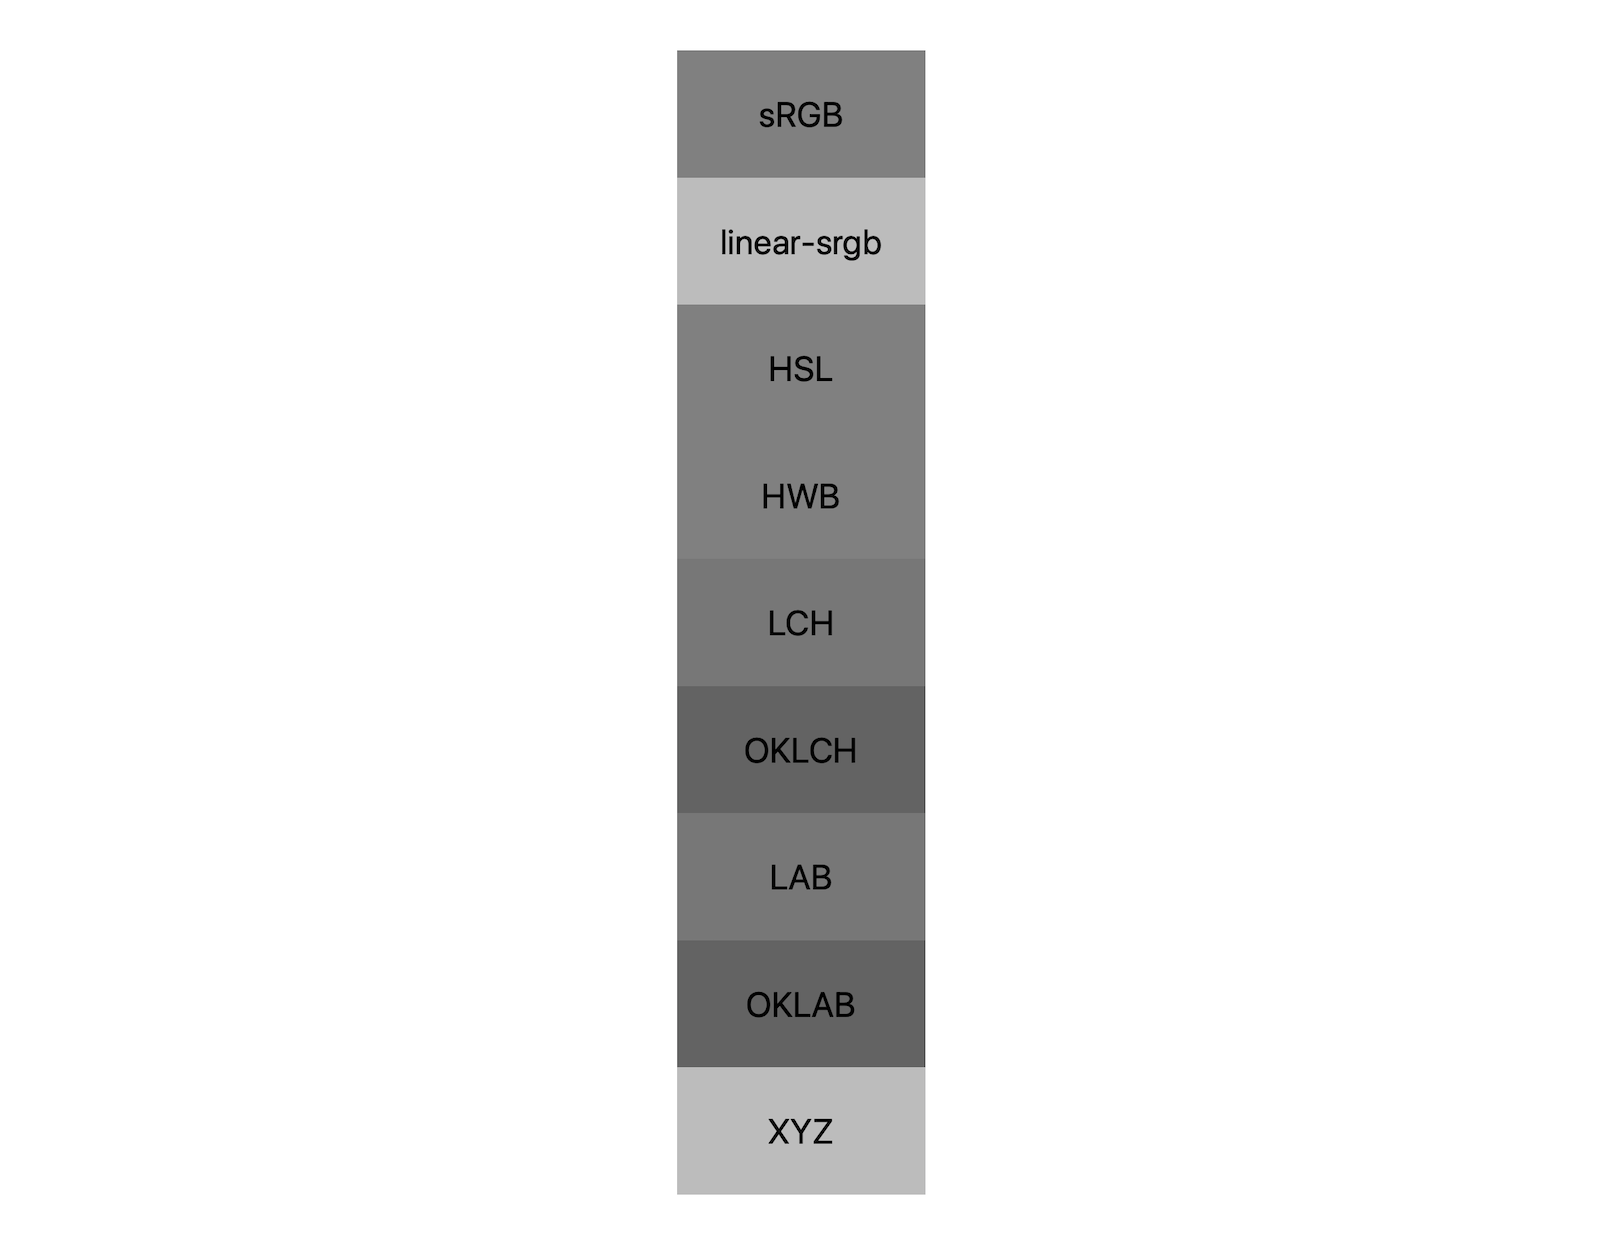 7 spazi colore (silizza, linear-sgsuite, lch, oklch, lab, oklab, xyz) mostrano ciascuno i loro risultati della miscelazione di bianco e nero. Vengono mostrate circa 5 diverse tonalità, a dimostrazione del fatto che ogni spazio colore si mescolerà anche con un grigio in modo diverso.